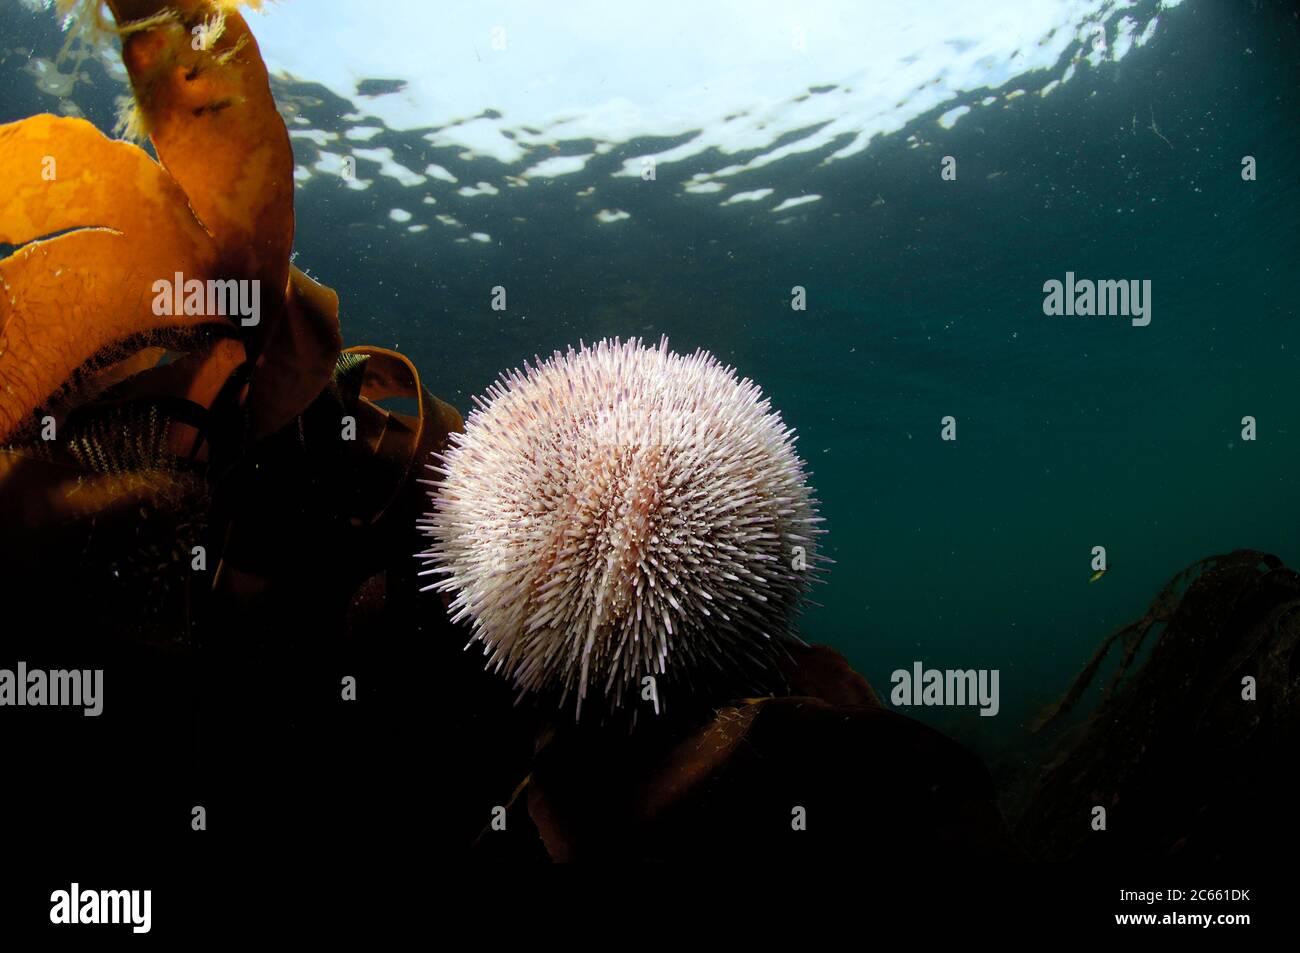 Riccio di mare commestibile / riccio di mare comune (Echinus esculentus) (dt. Esbarer Seeigel) Foto Stock